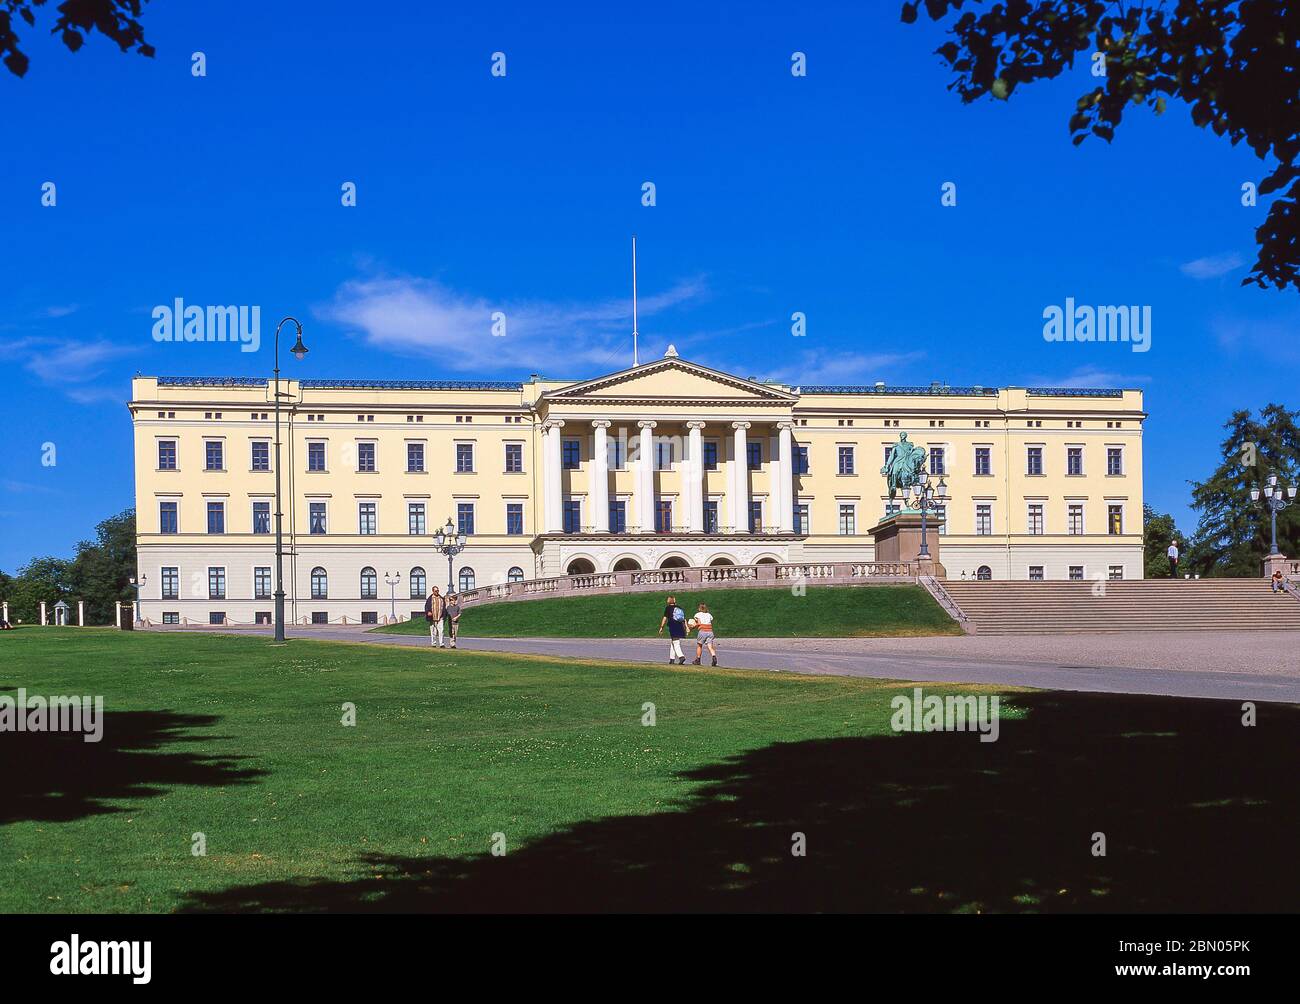 The Royal Palace (Slottet), St Johans Gate, Oslo, Kingdom of Norway Stock Photo